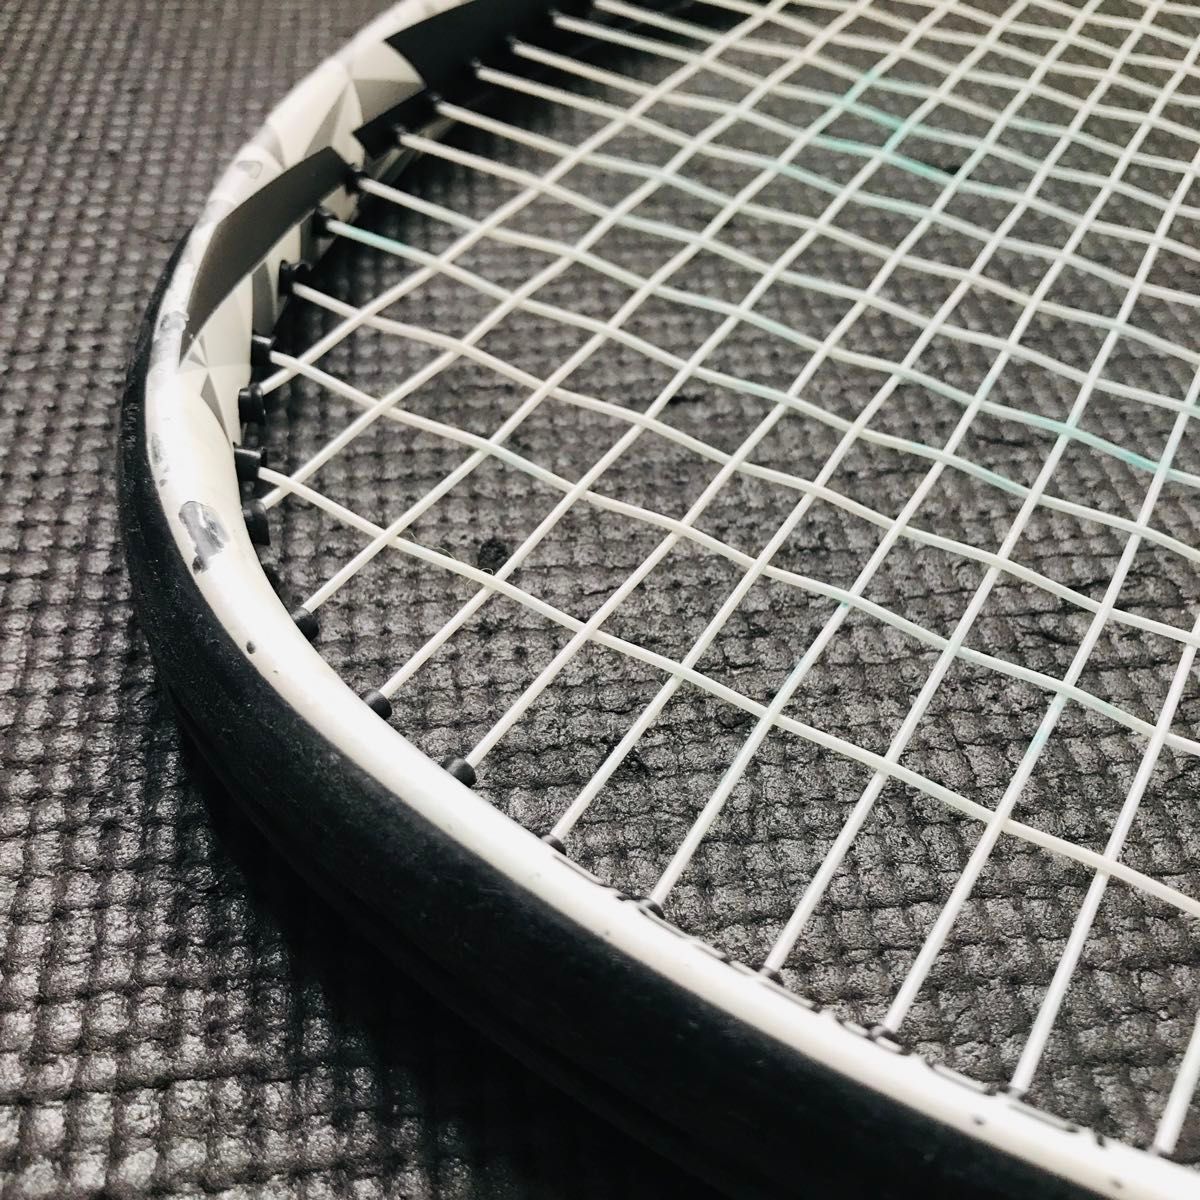 YONEX　ヨネックス　テニスラケット　EZONE FEEL　ISOMETRIC